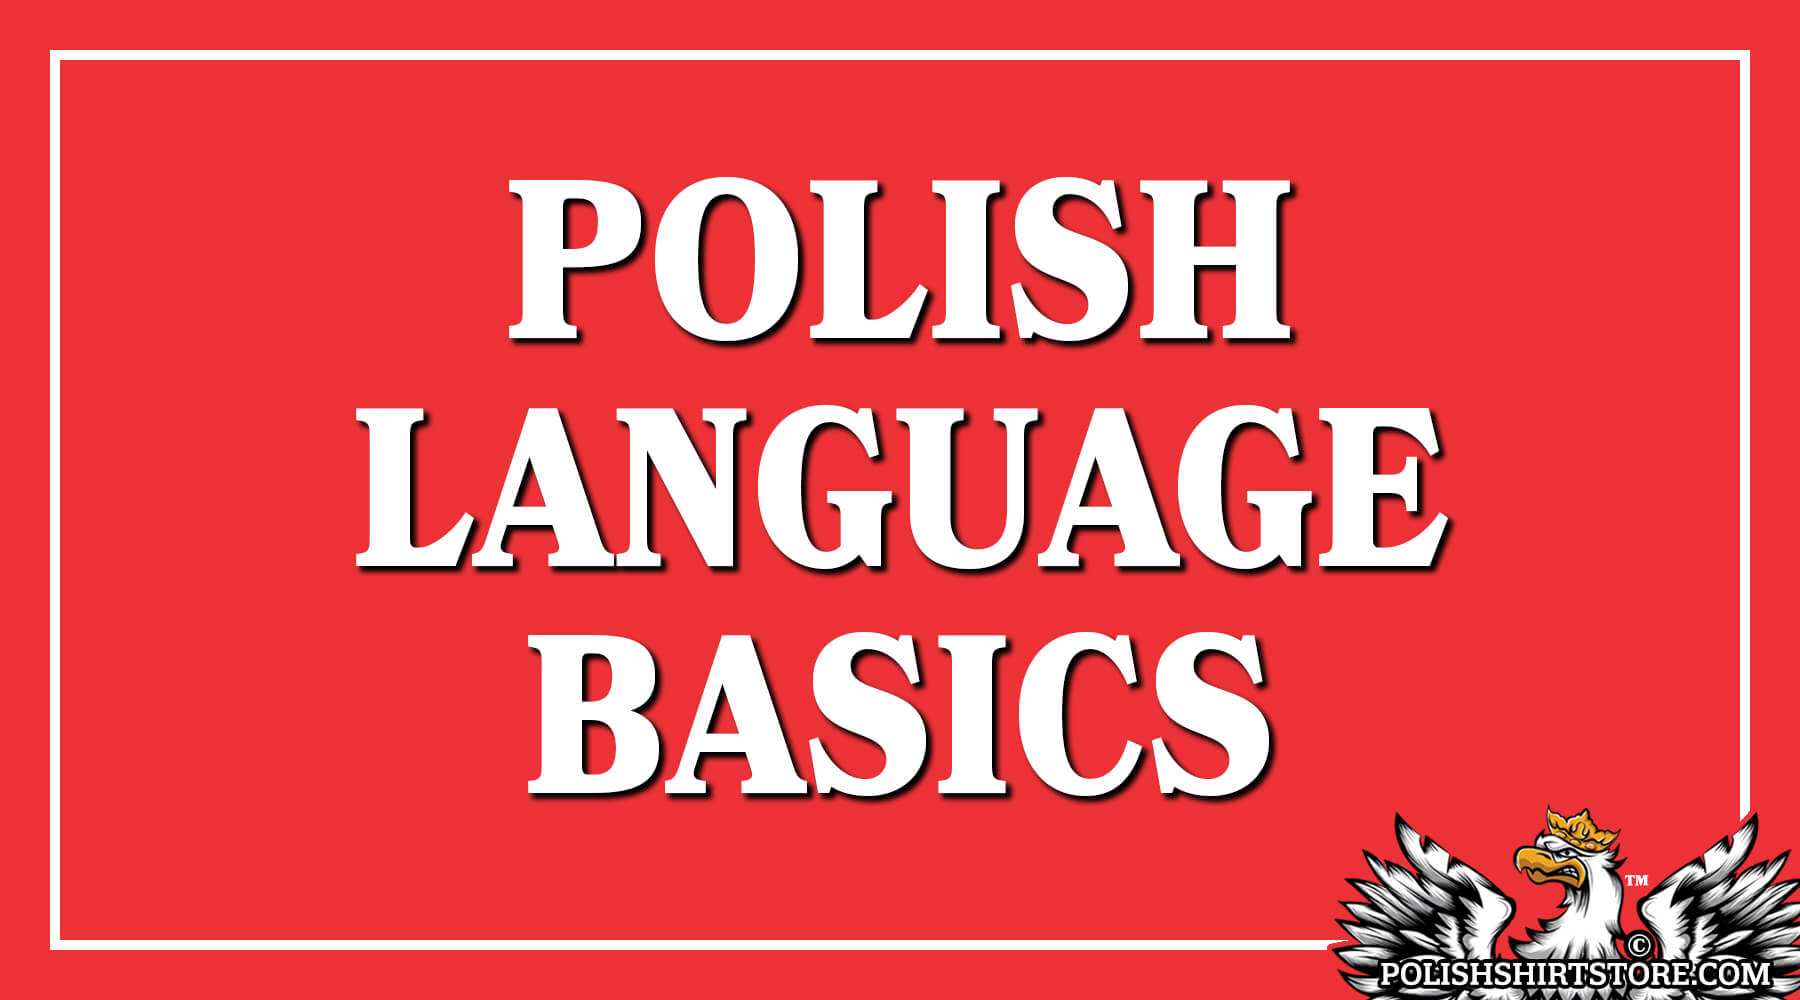 Polish Language Basics - Learn The Polish Language